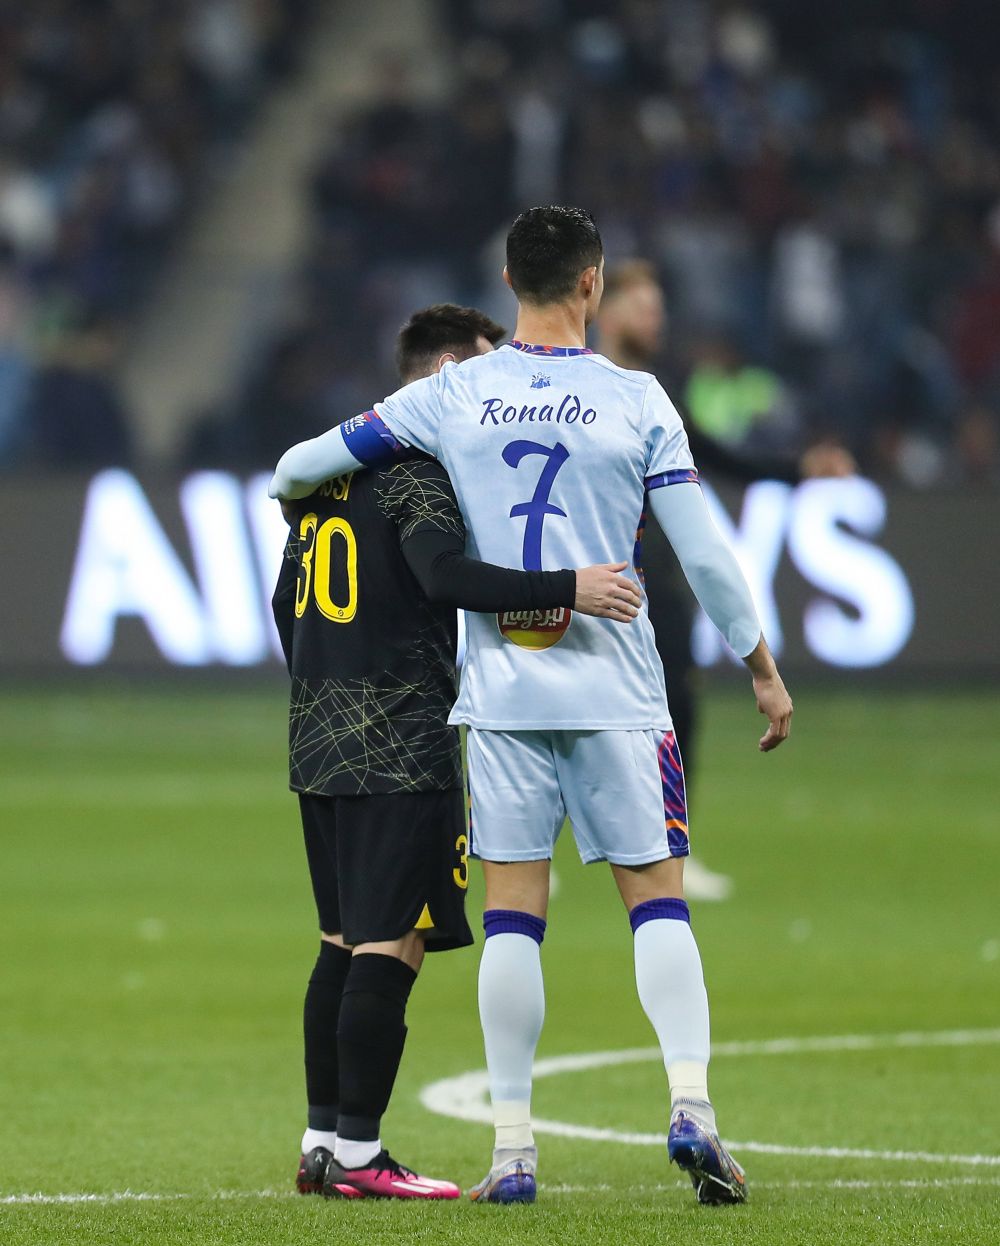 PSG a publicat imaginile cu Messi și Ronaldo care nu s-au văzut la TV: "Ce secvență incredibilă!"_30